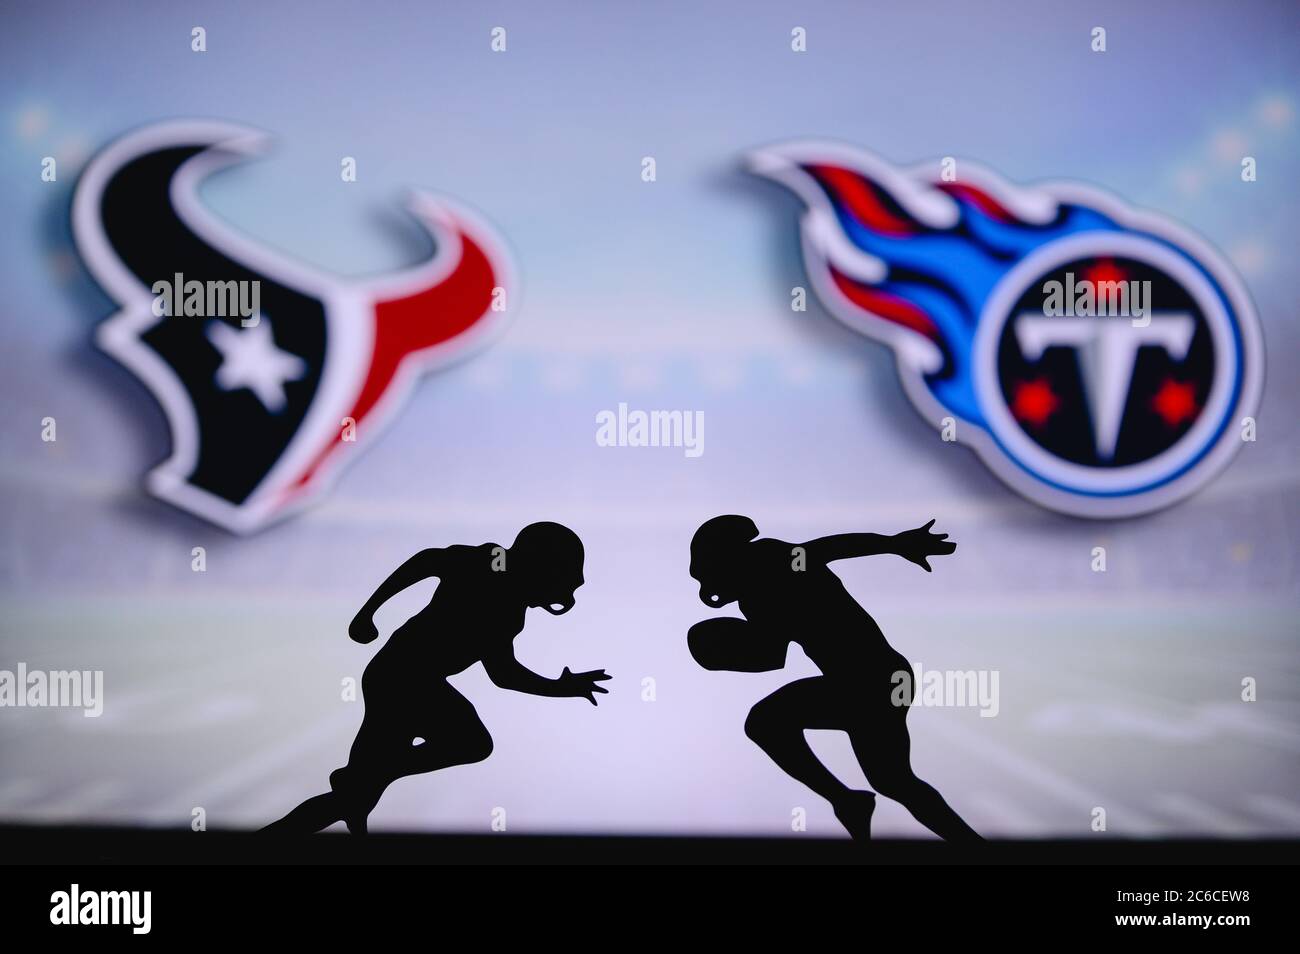 Texas de Houston contre Titans du Tennessee. Affiche NFL Match. Deux joueurs de football américain se font face sur le terrain. Logo des clubs dans backgrou Banque D'Images